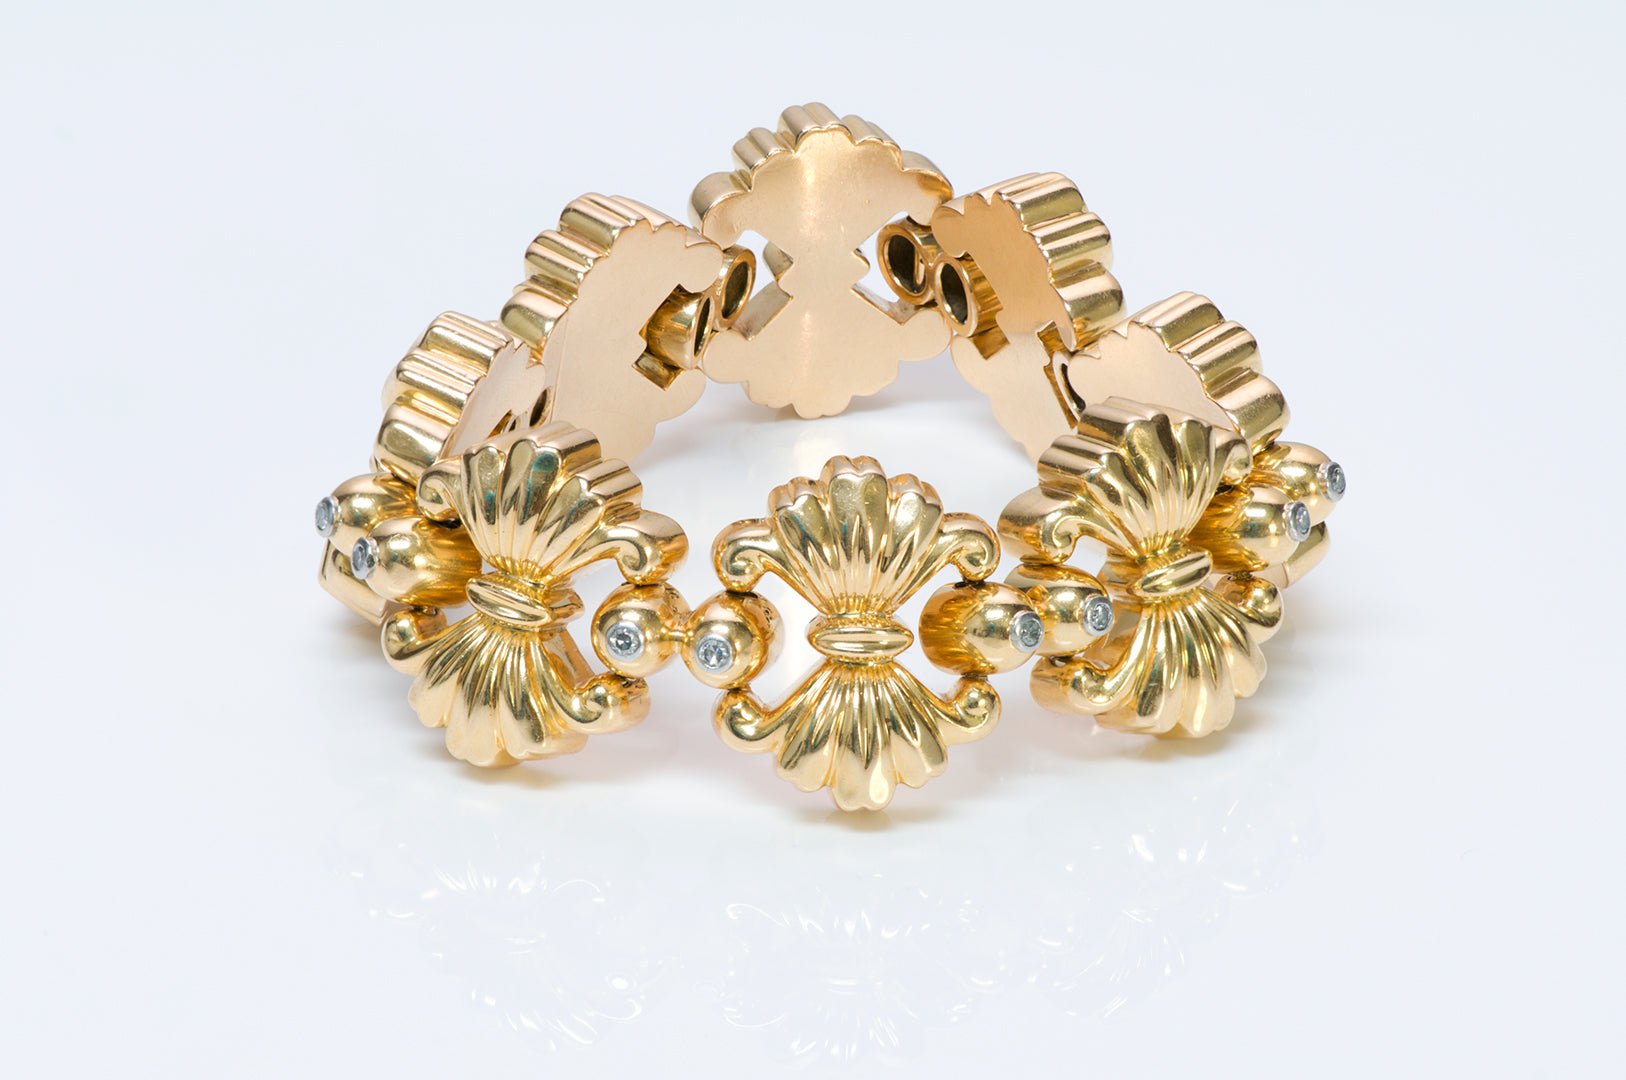 Vintage 18K Gold Diamond Bracelet